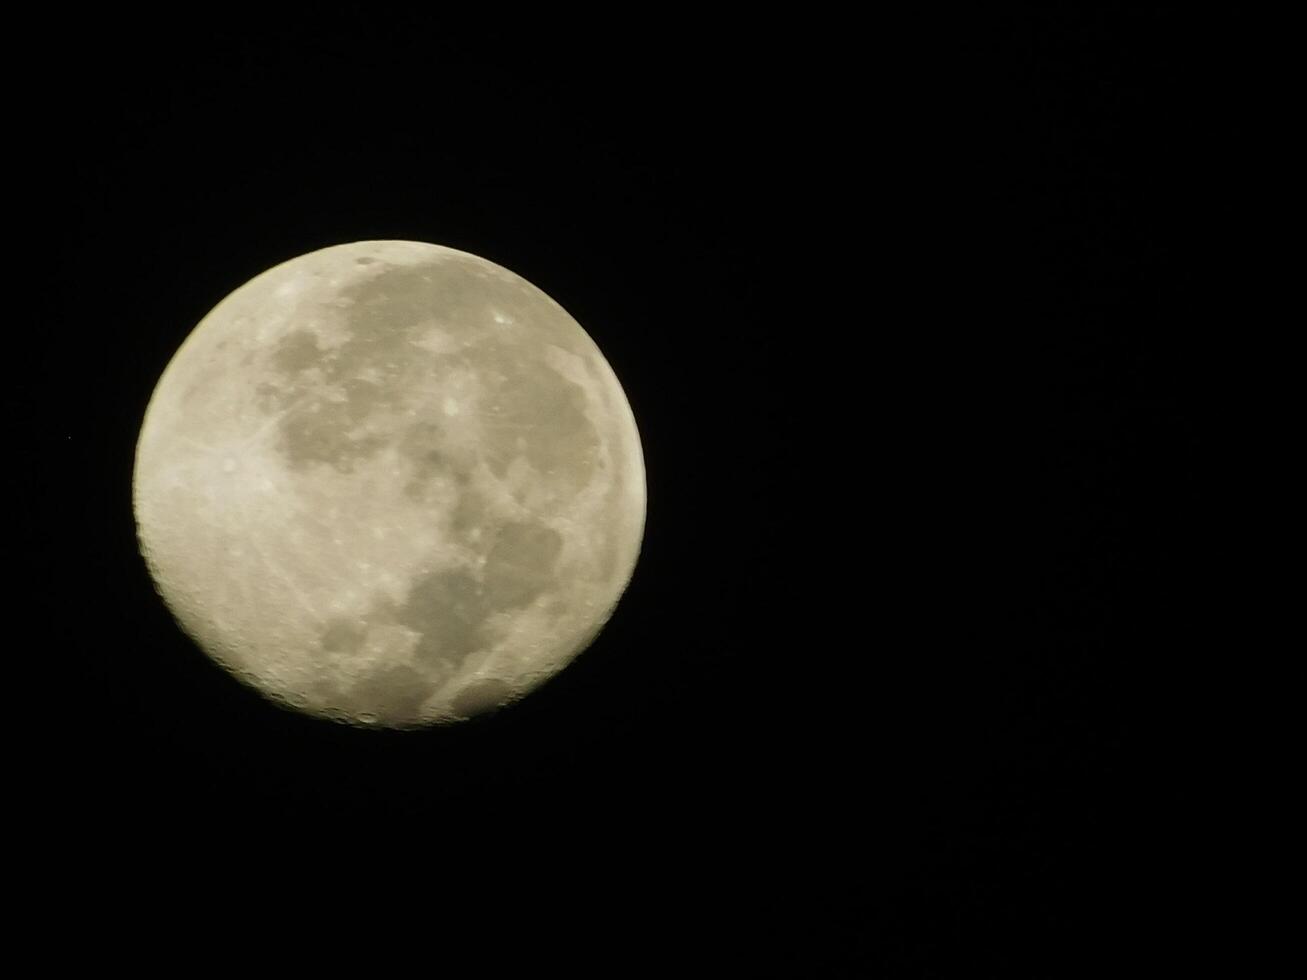 plein lune potrait à nuit photo